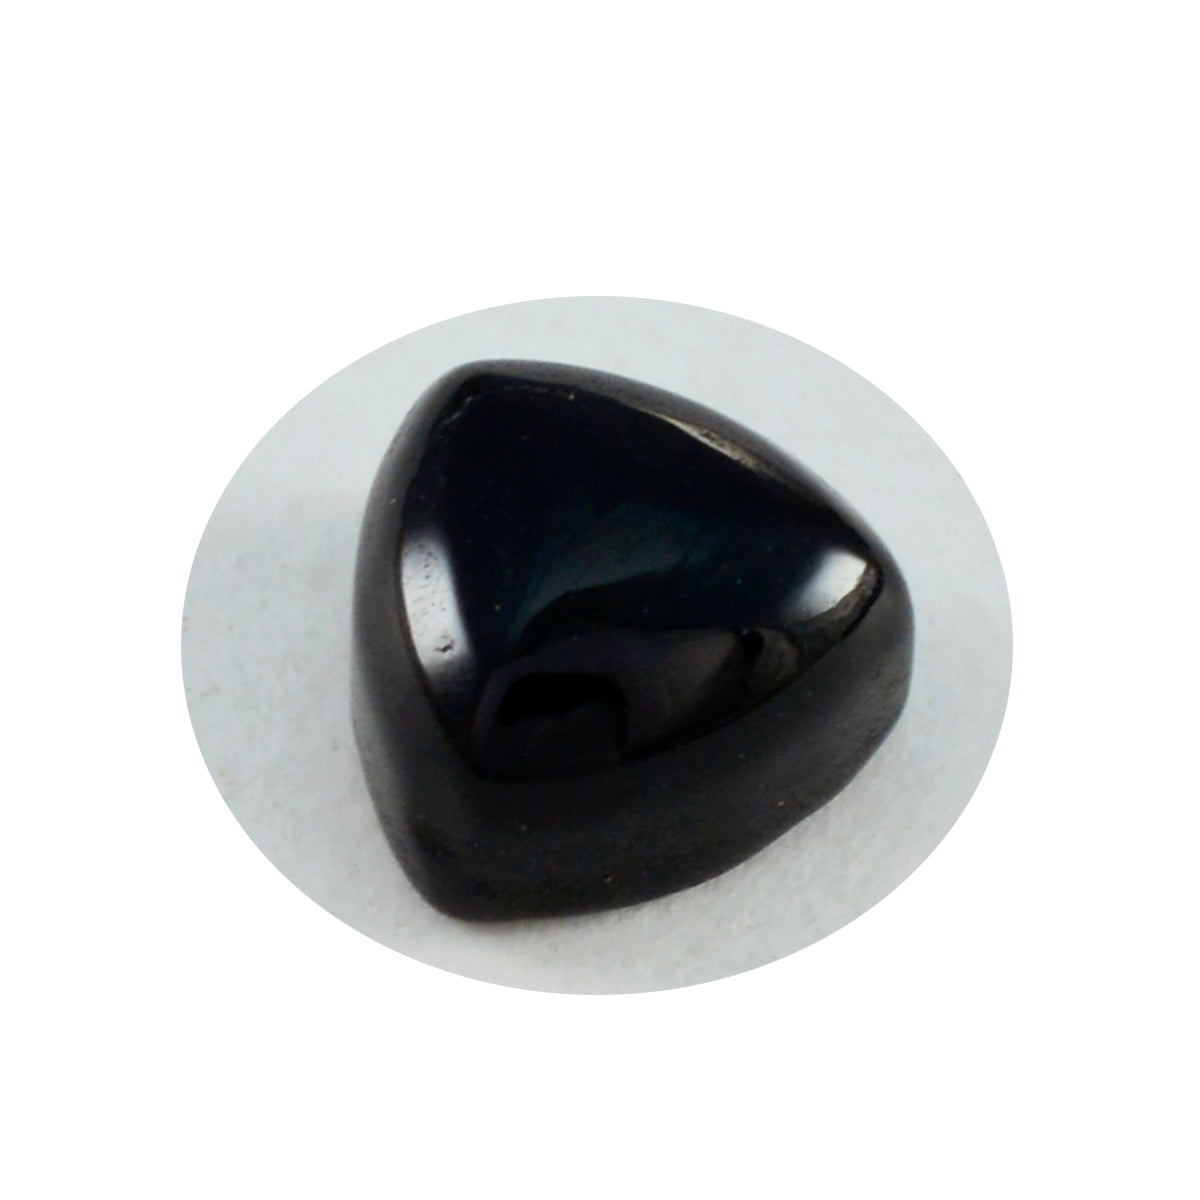 riyogems 1 шт. кабошон из черного оникса 15x15 мм, форма триллиона, привлекательный качественный драгоценный камень